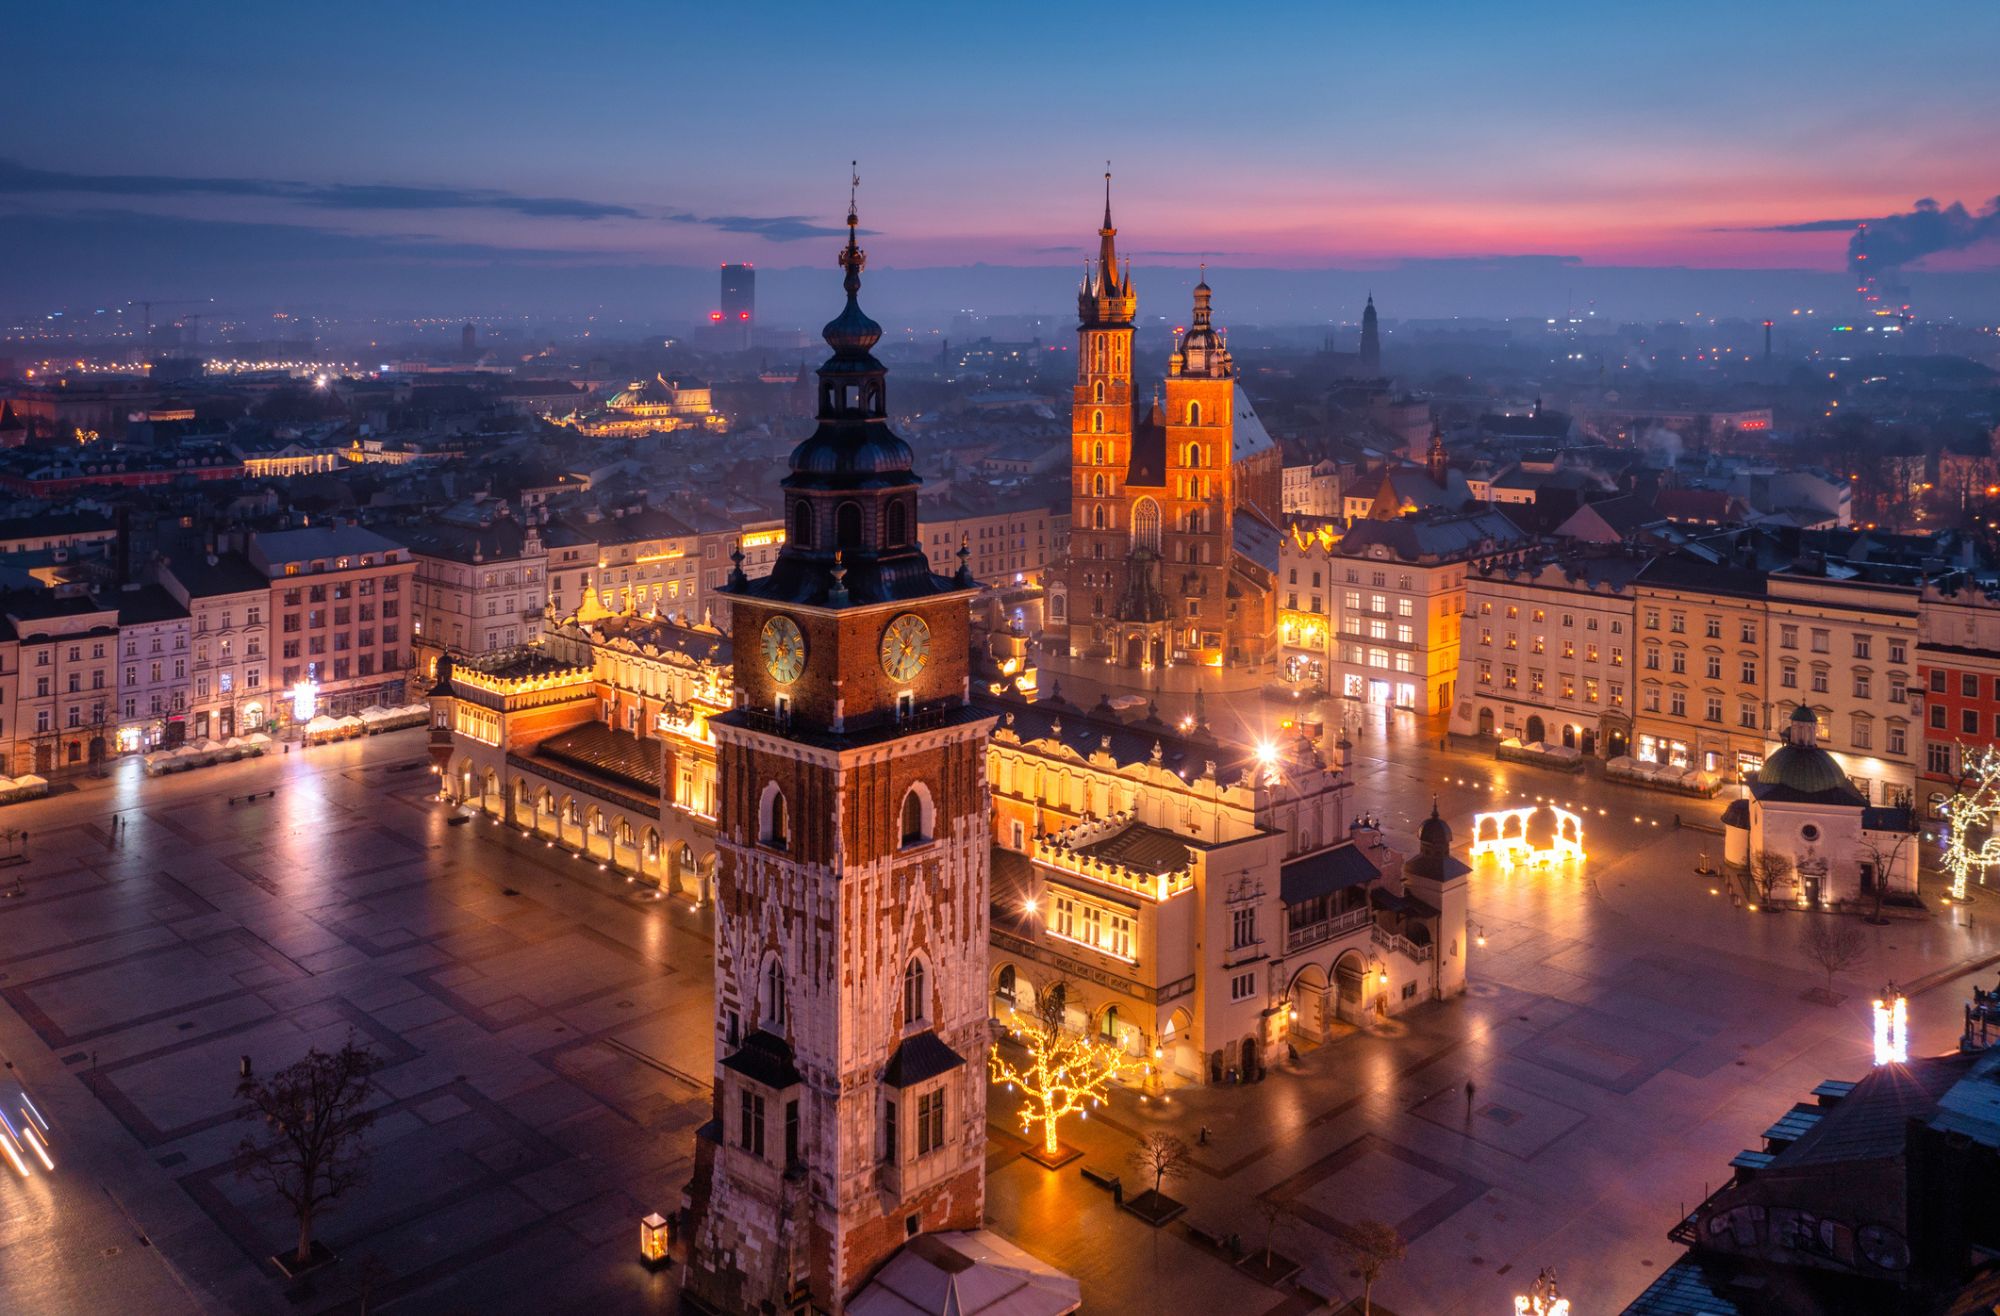 Kraków: Odkrywanie miasta z perspektywy turysty i mieszkańca (webinar)